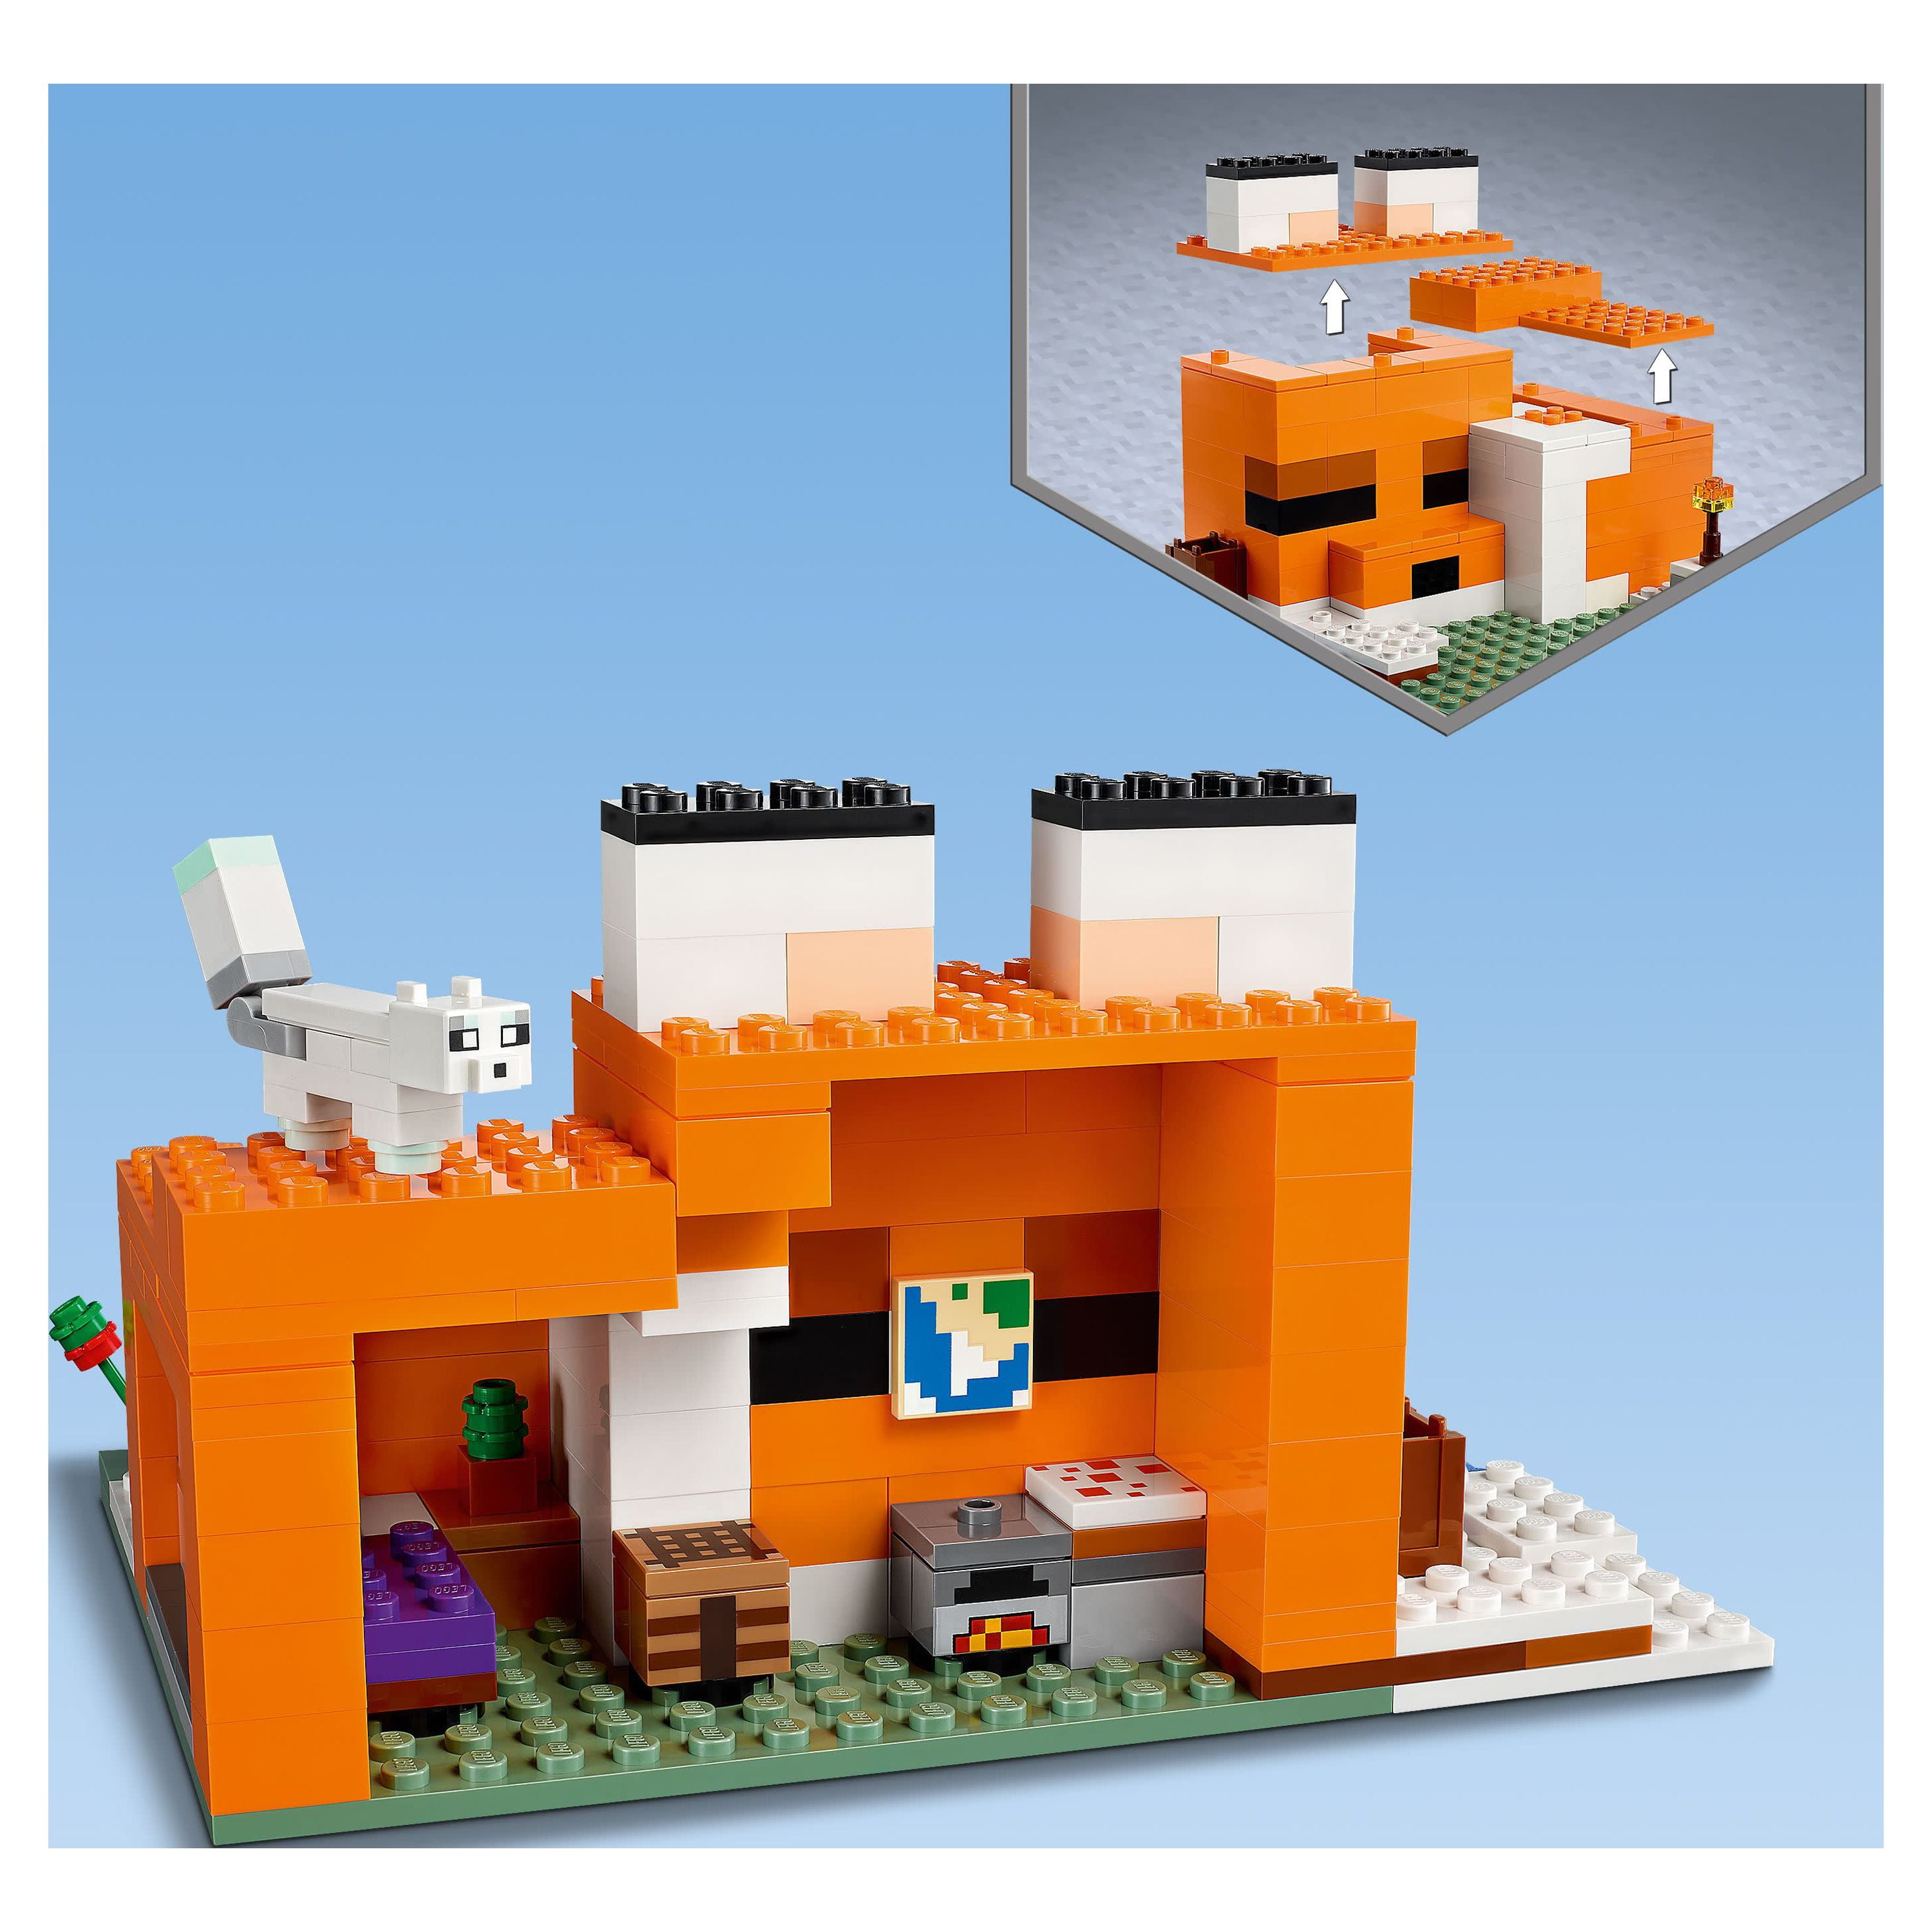 Nouveau lego minecraft : la maison des Renard 🦊 21178 